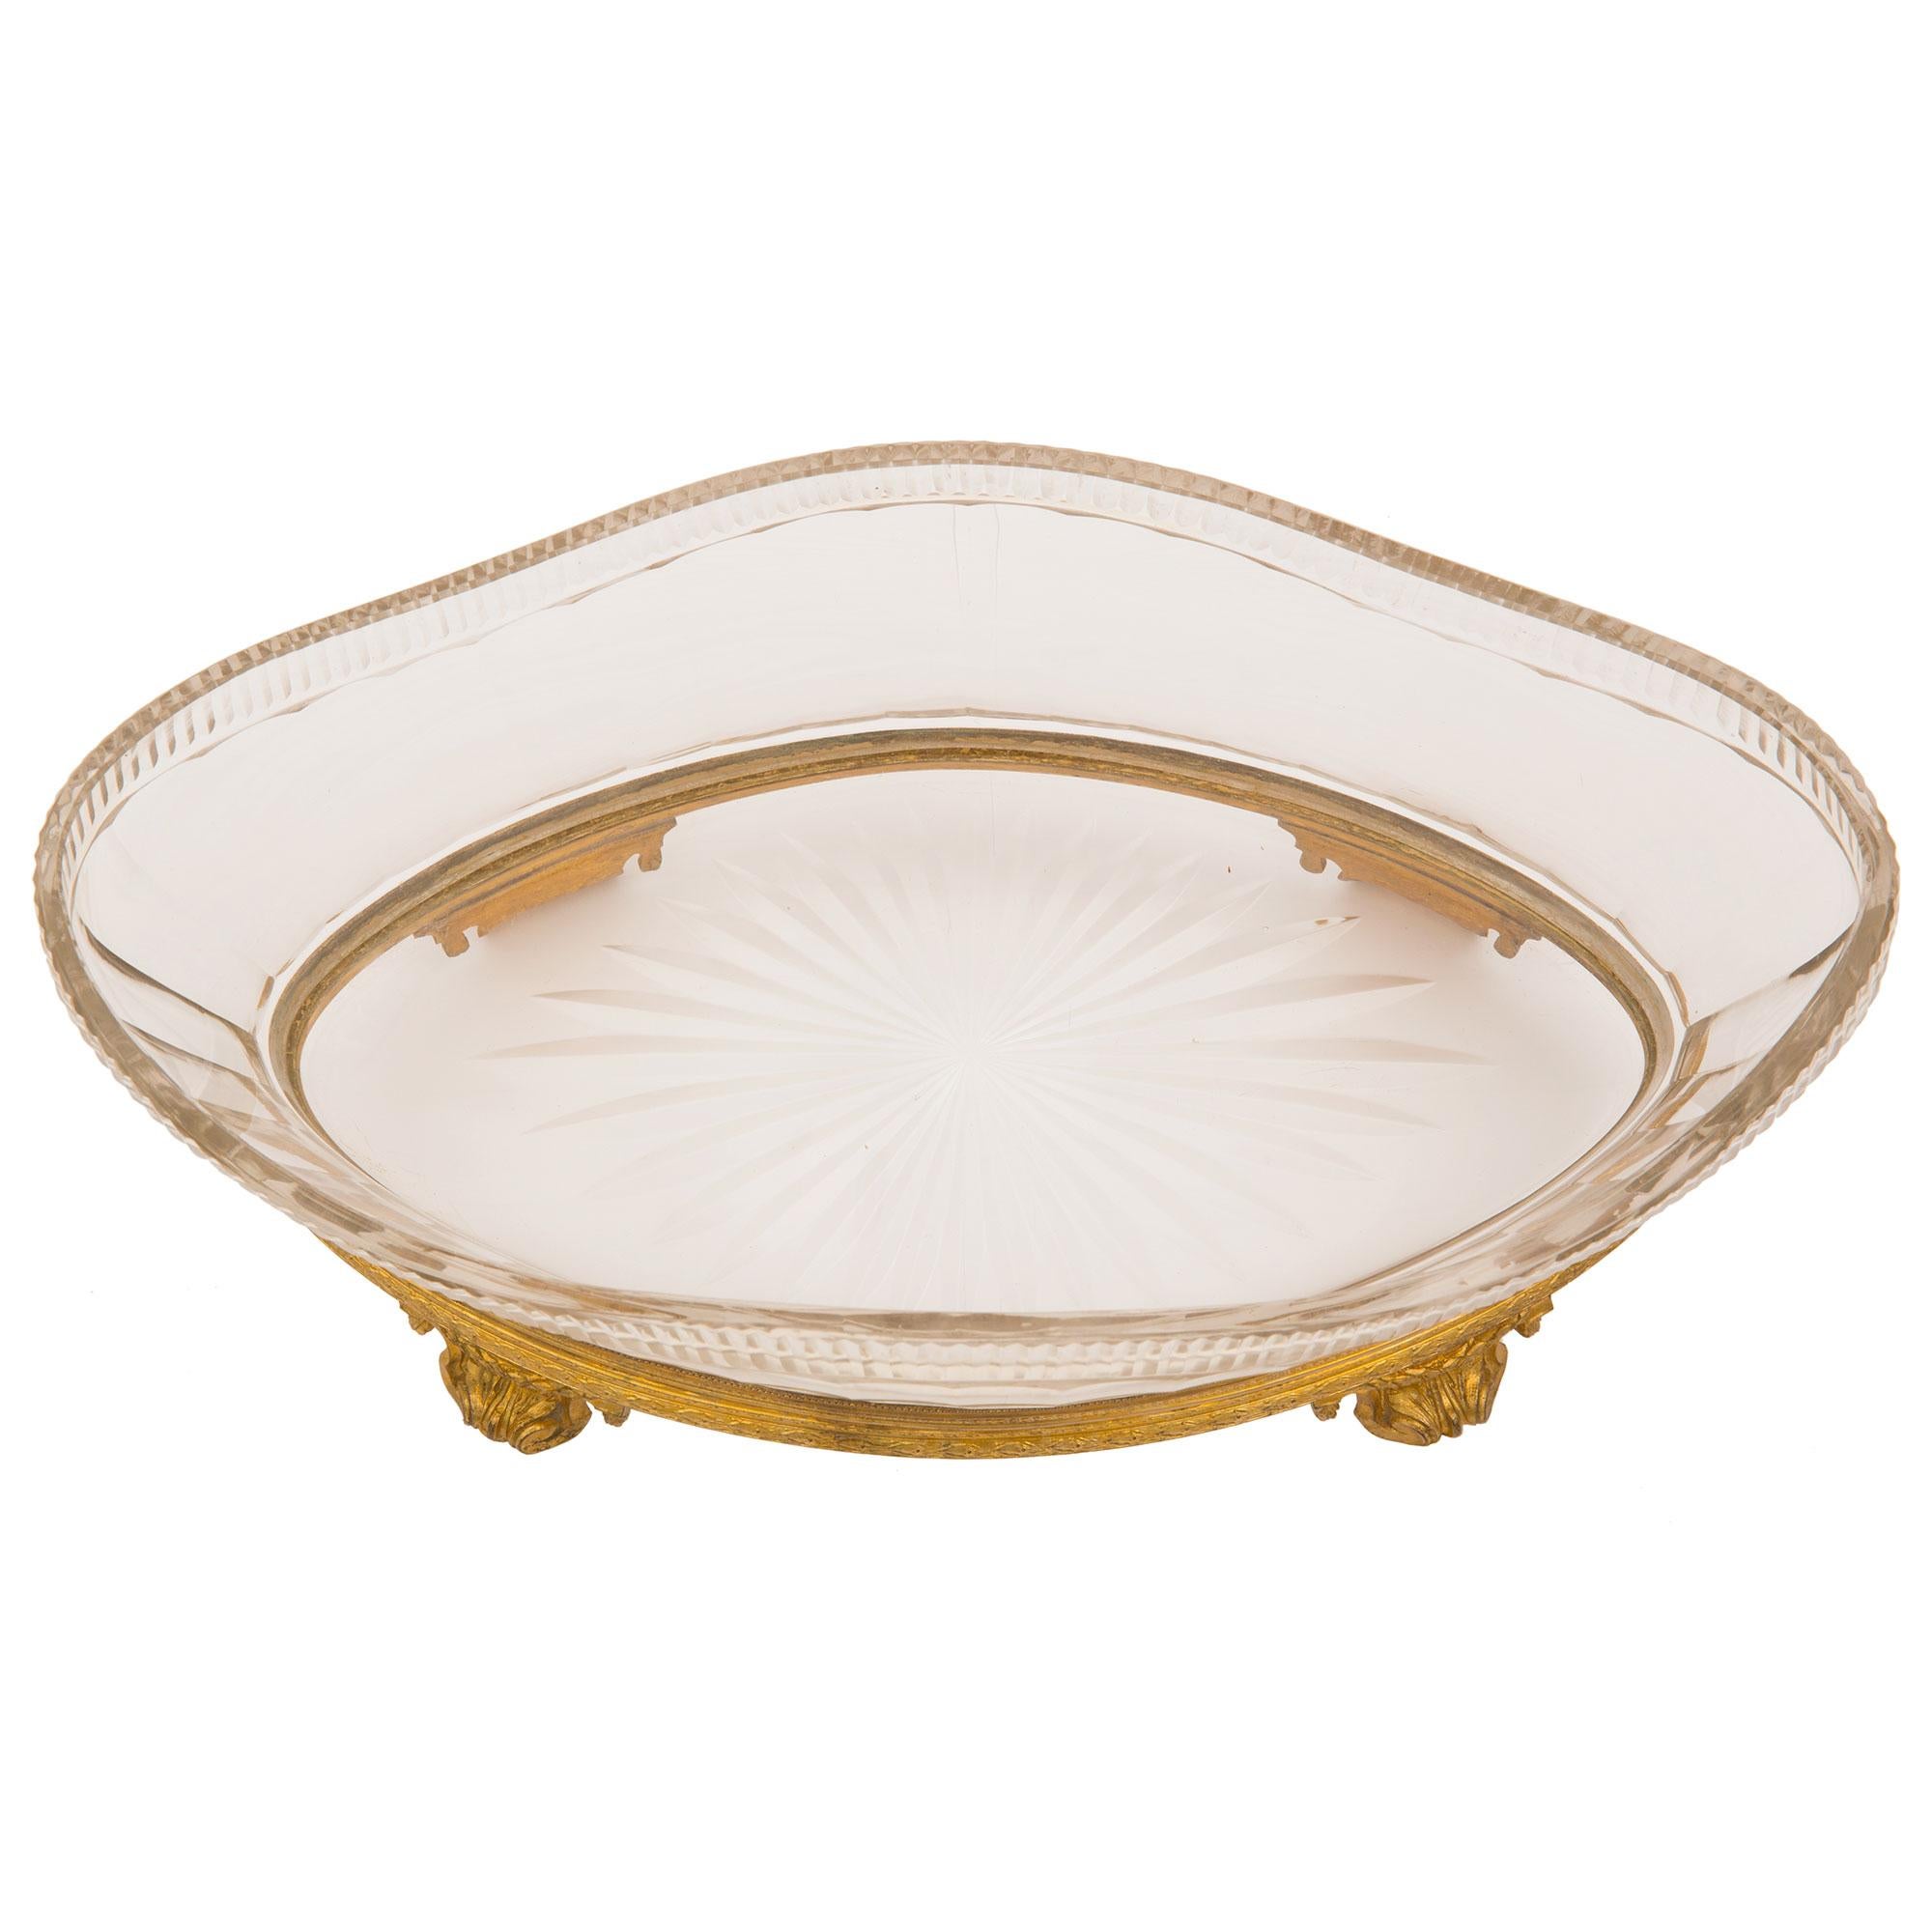 Une exquise coupe de centre de table de forme ovale en cristal de Baccarat de style Louis XVI du 19ème siècle et en bronze doré. La pièce centrale est surélevée par d'élégants supports feuillus à volutes avec de délicates guirlandes de laurier. Une